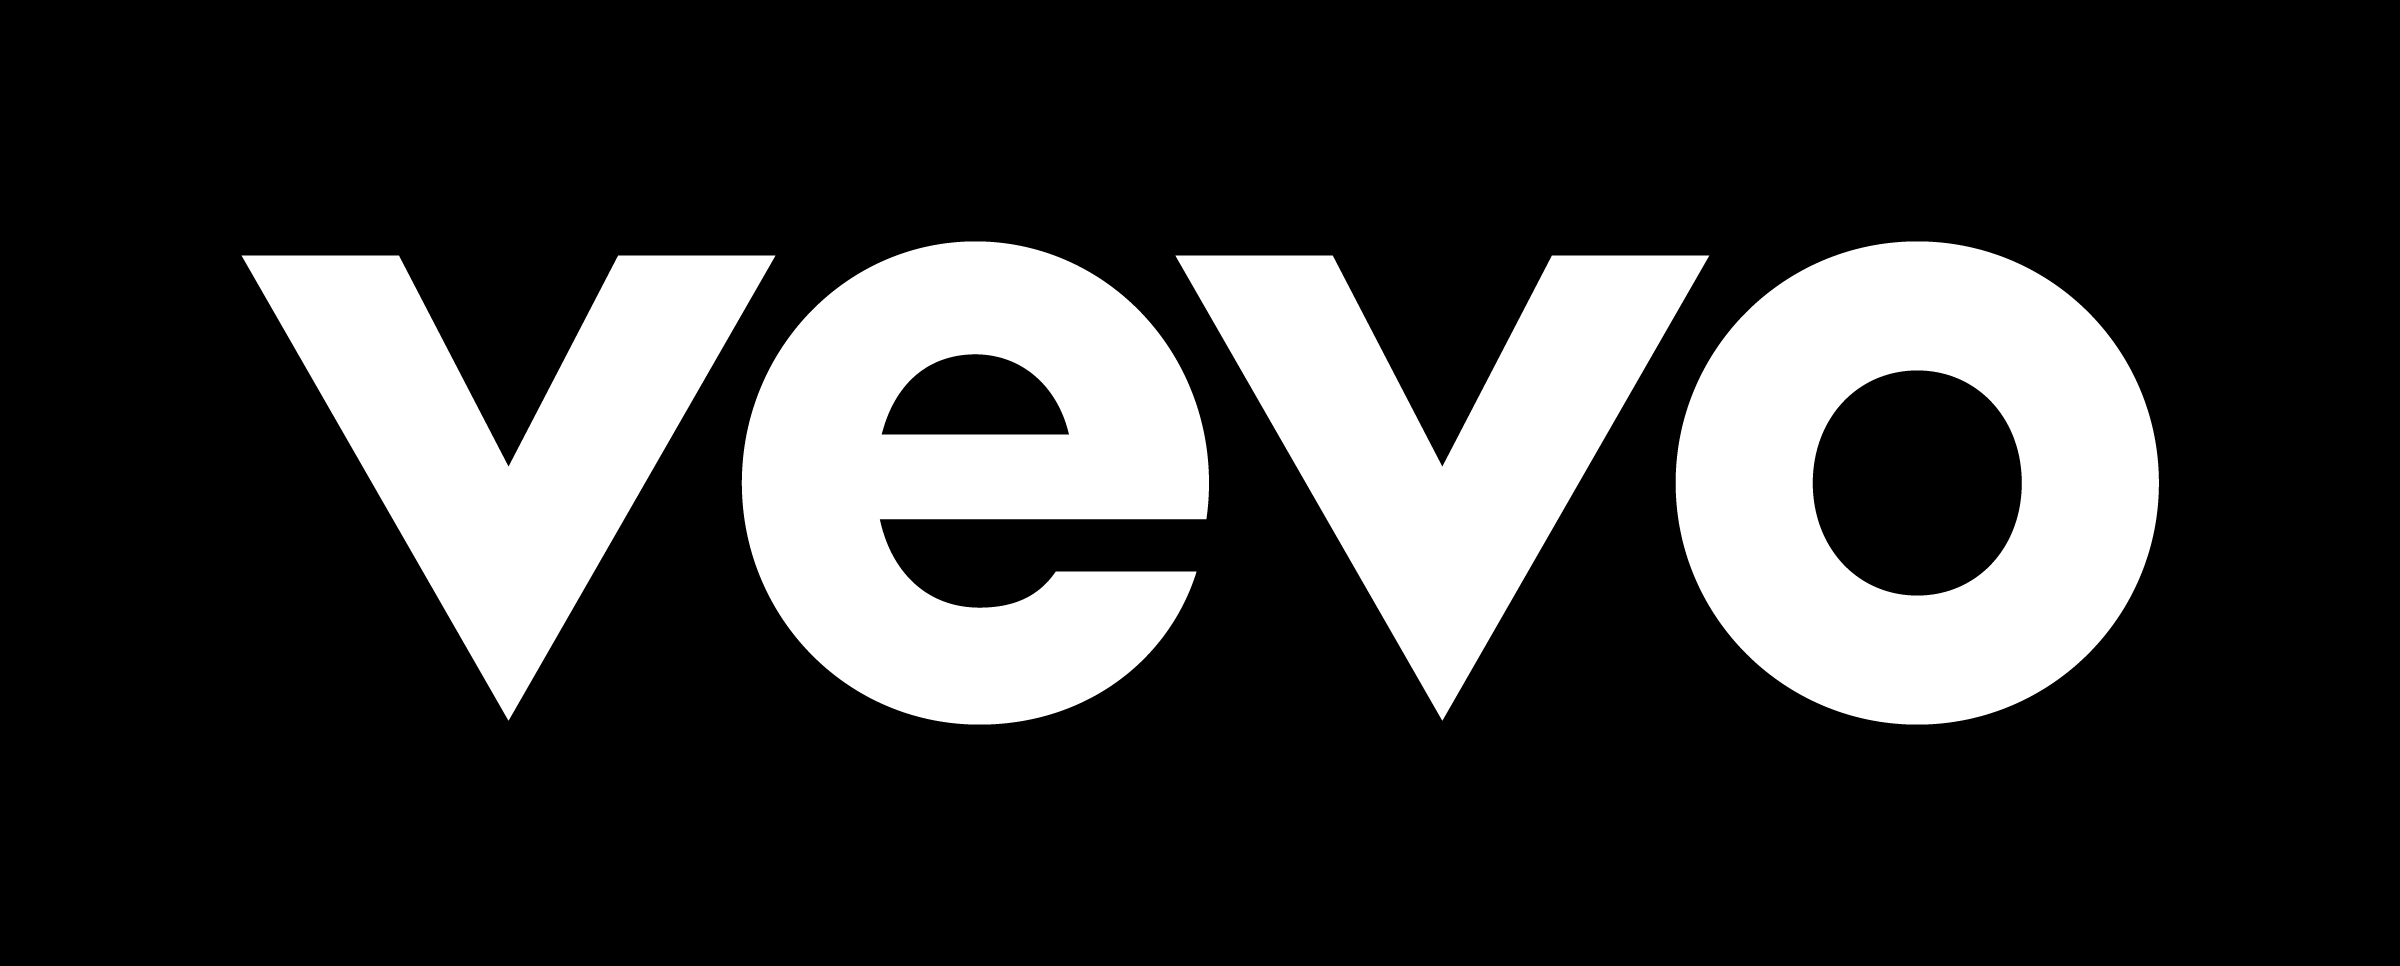 Vevo Logo - Brand